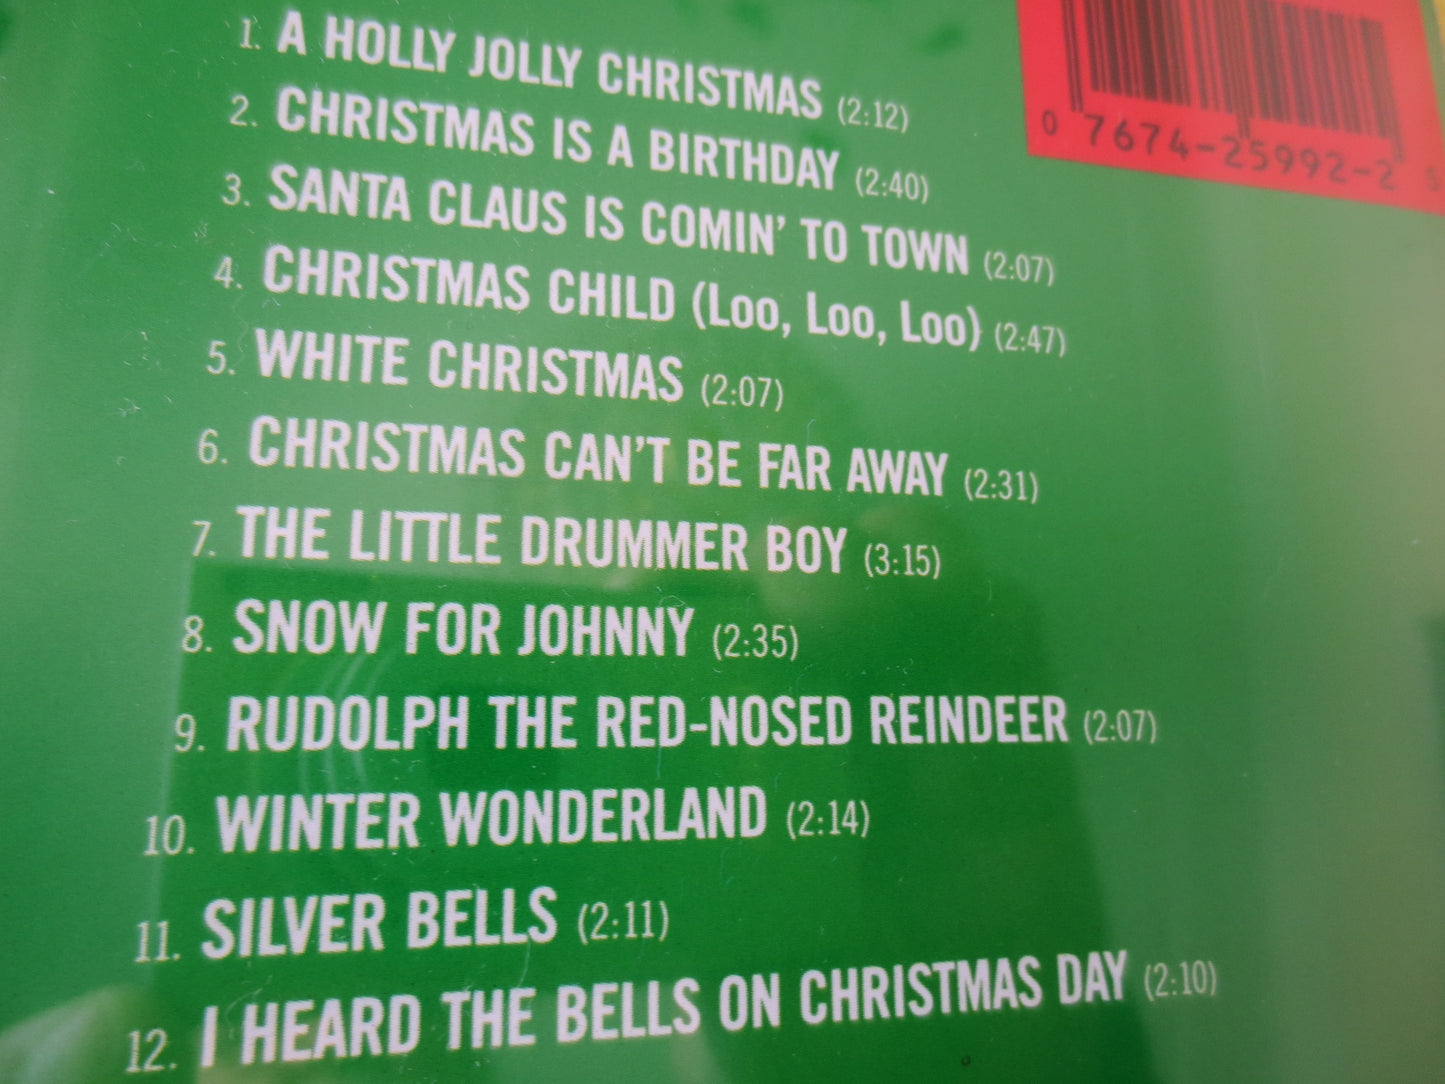 BURL IVES, CHRISTMAS Album, Christmas Music Cd, Christmas Cd, Burl Ives Cds, Burl Ives Christmas, Folk Song, 1987 Compact Disc